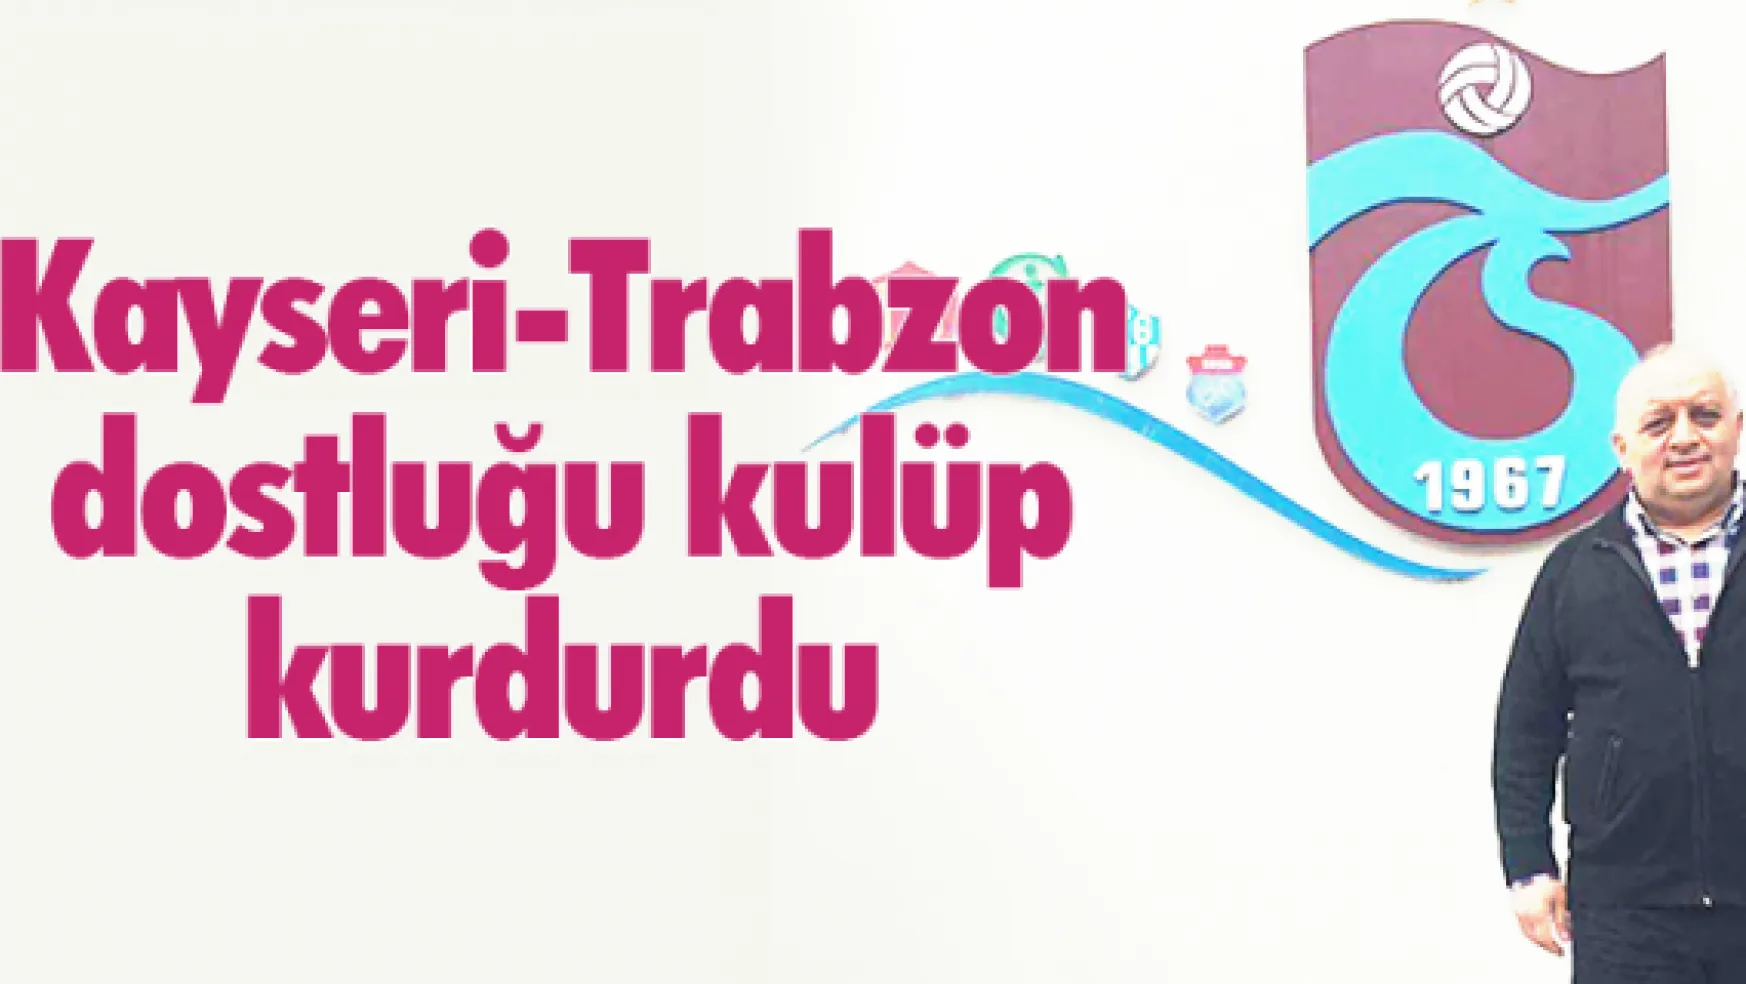 Kayseri-Trabzon dostluğu kulüp kurdurdu